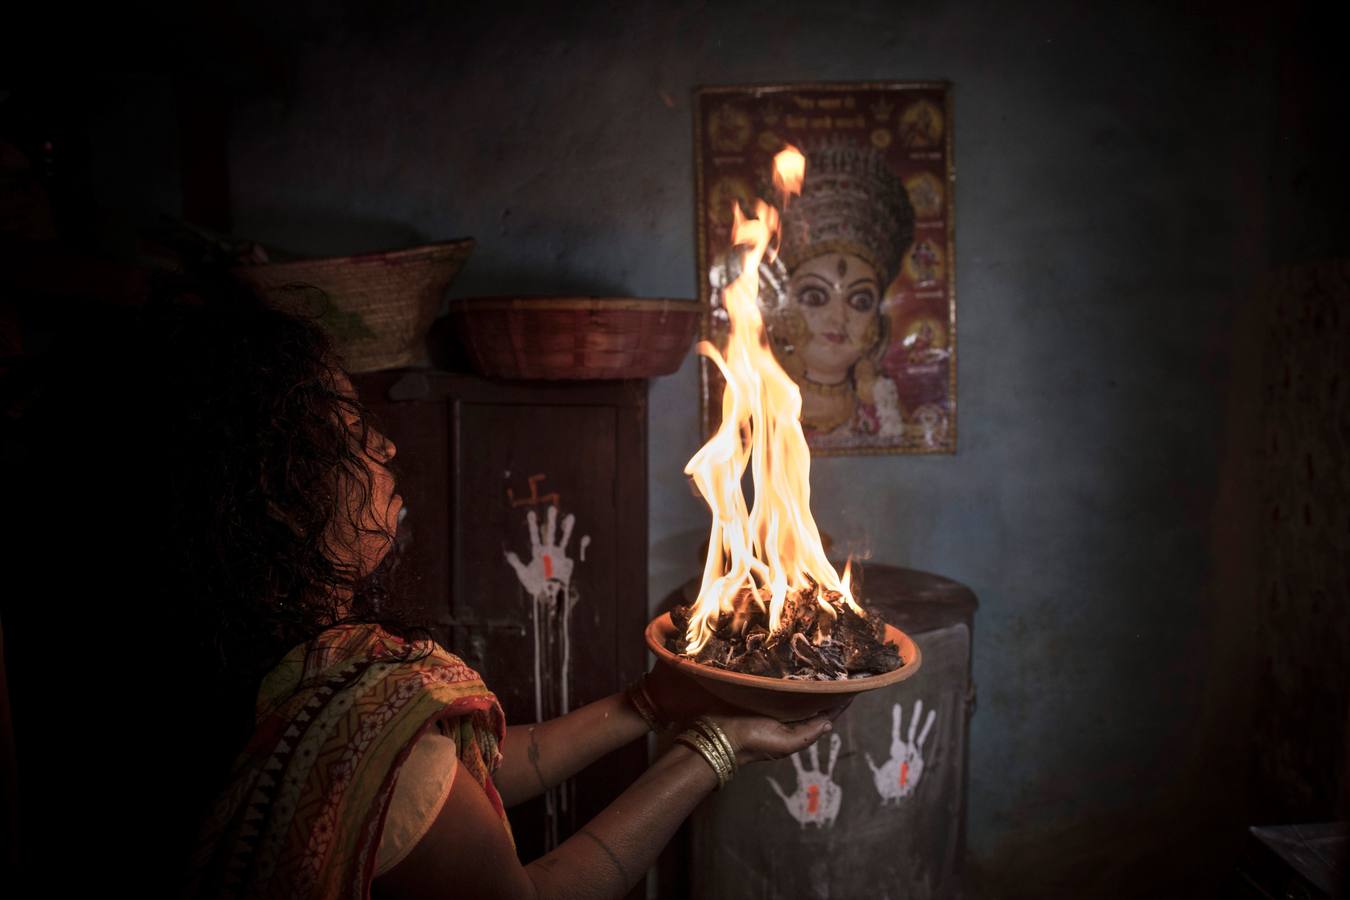 Un grupo de mujeres que creen haber sido poseídas por espíritus malignos danzan y cantan mantras en la víspera de una noche de luna llena, mientras se congregan para la celebración del "Festival de los fantasmas", en las orillas del río Kamala en el distrito de Danusha (Nepal), el 3 de noviembre de 2017. La celebración tiene siglos de tradición y tiene lugar anualmente en la noche de luna llena de noviembre. Miles de personas se congregan para llevar a cabo rituales de sanación conducidos por chamanes, en los que se "cura" a personas poseídas de espíritus malignos que acechan el porvenir de las familias.